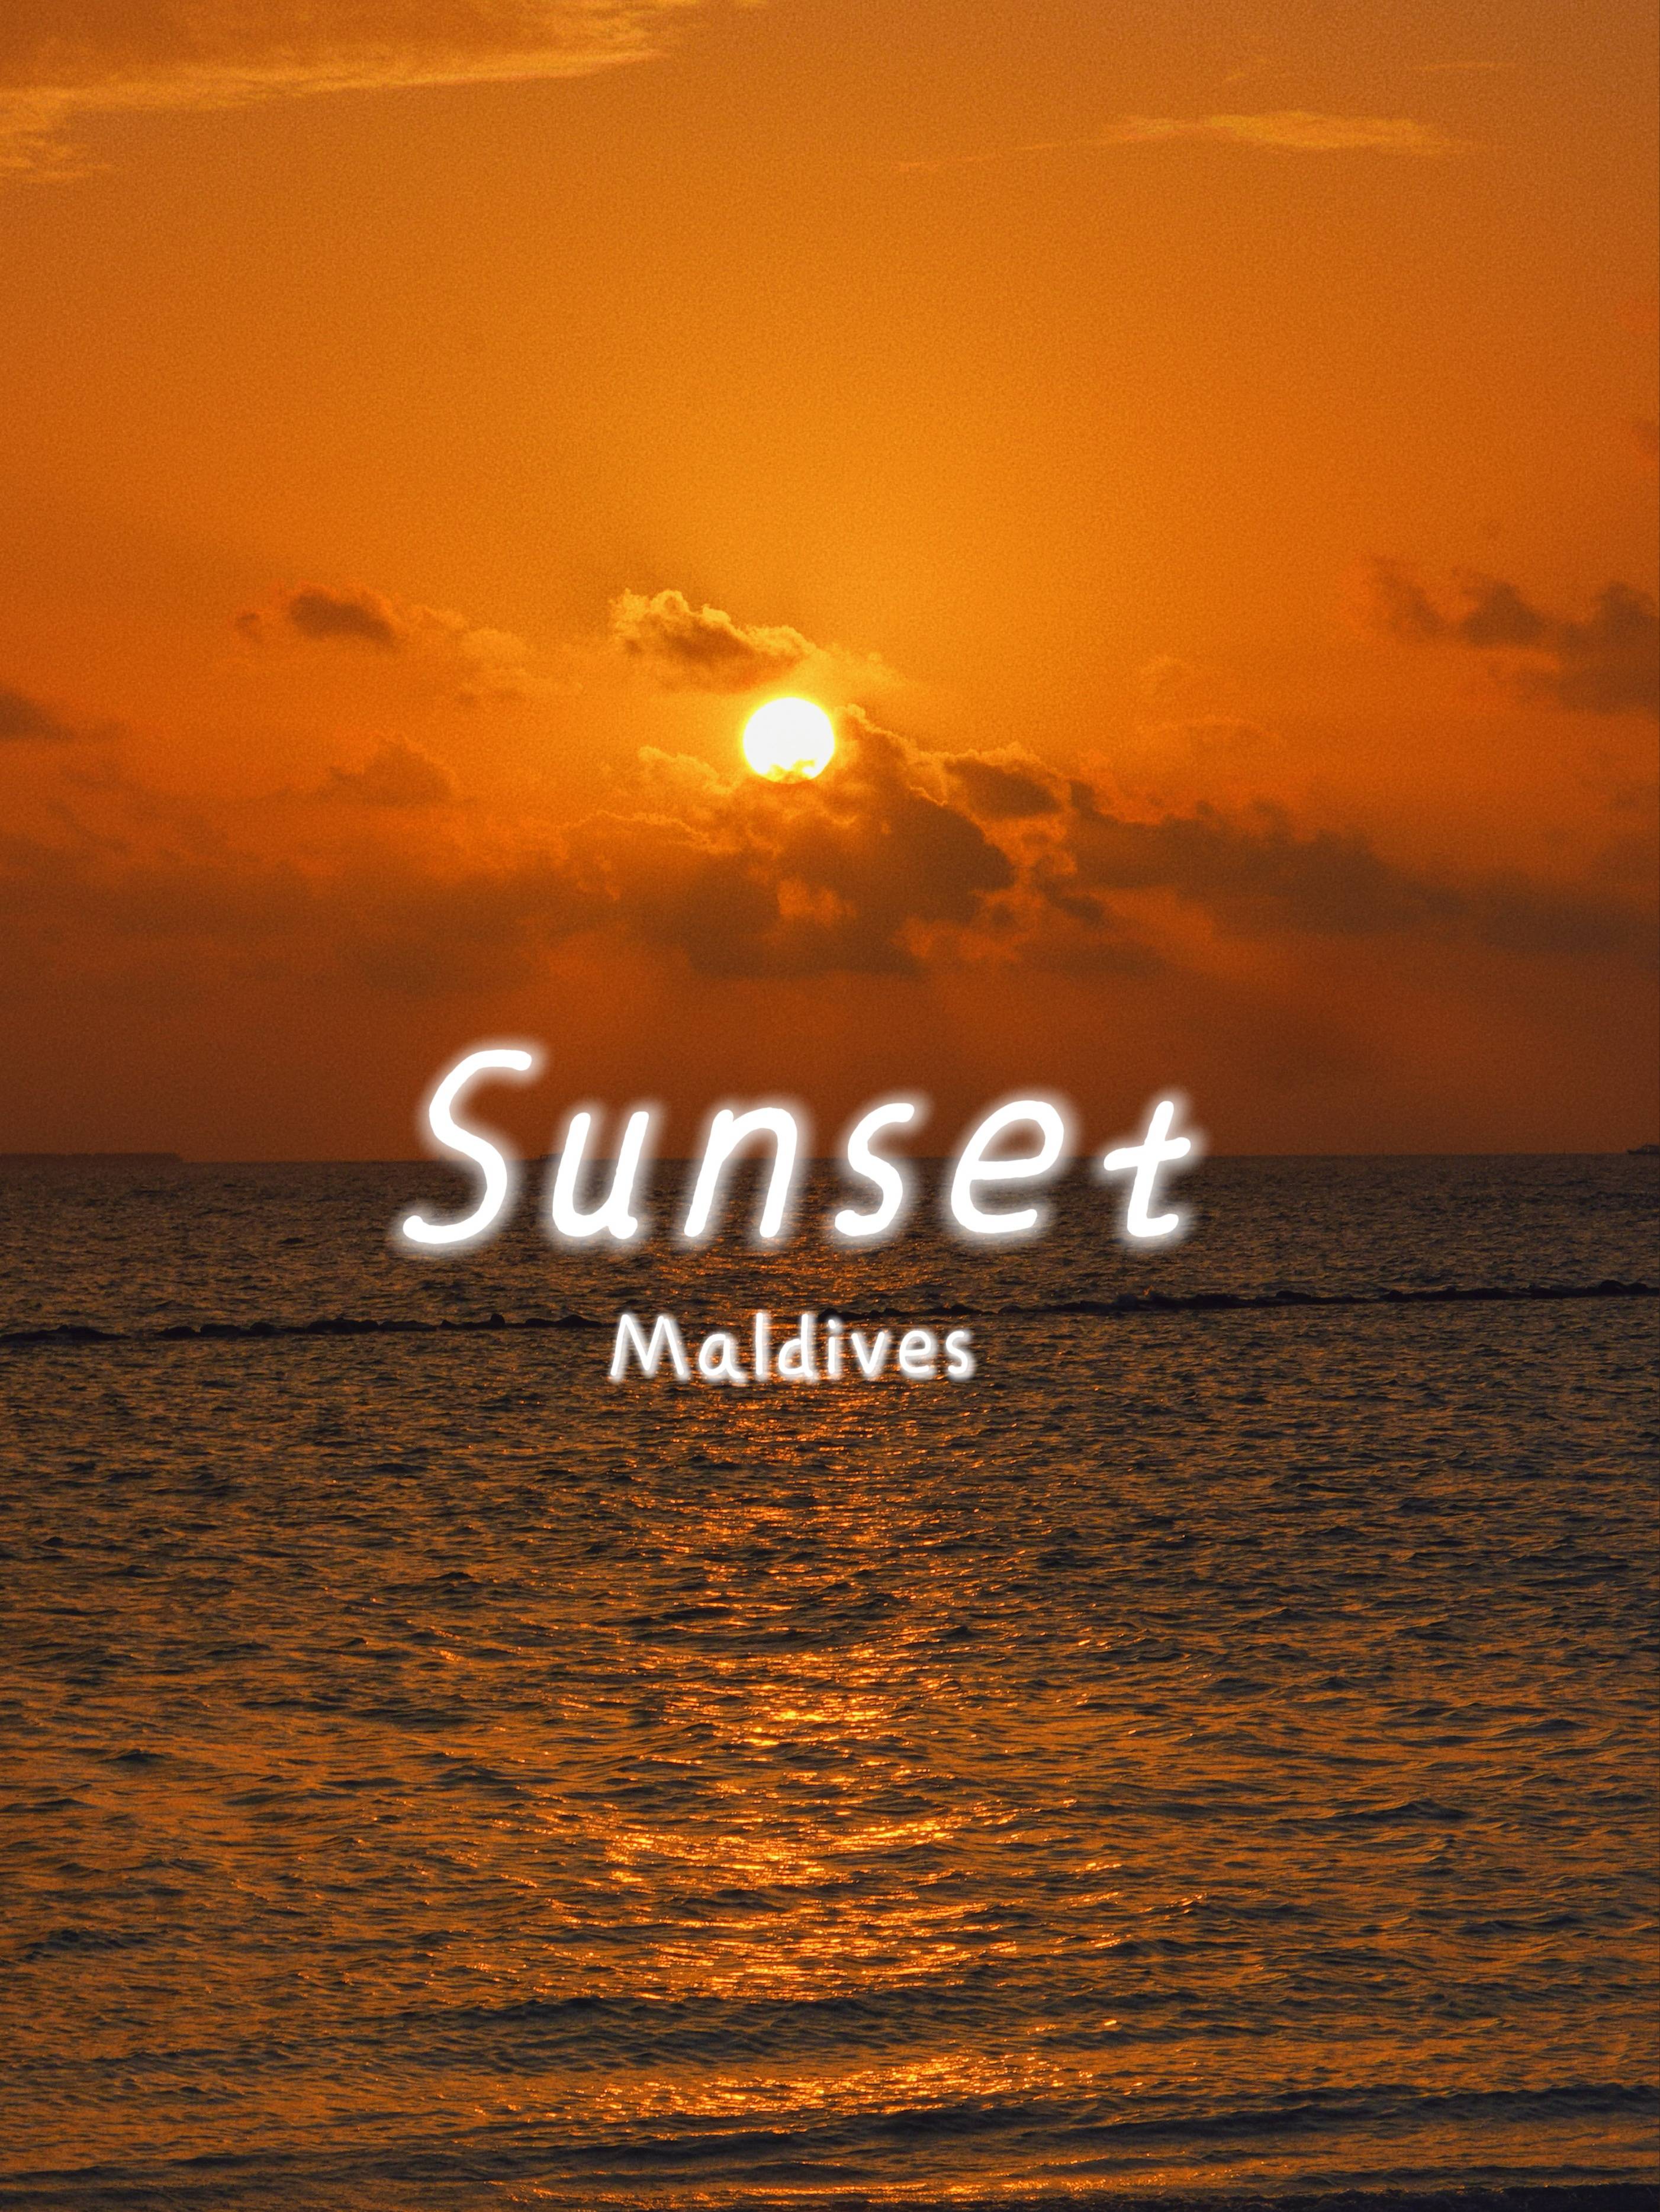 马尔代夫旅行:马尔代夫旅行马尔代夫旅行，治愈的海岛时光，每天在海浪声中醒来